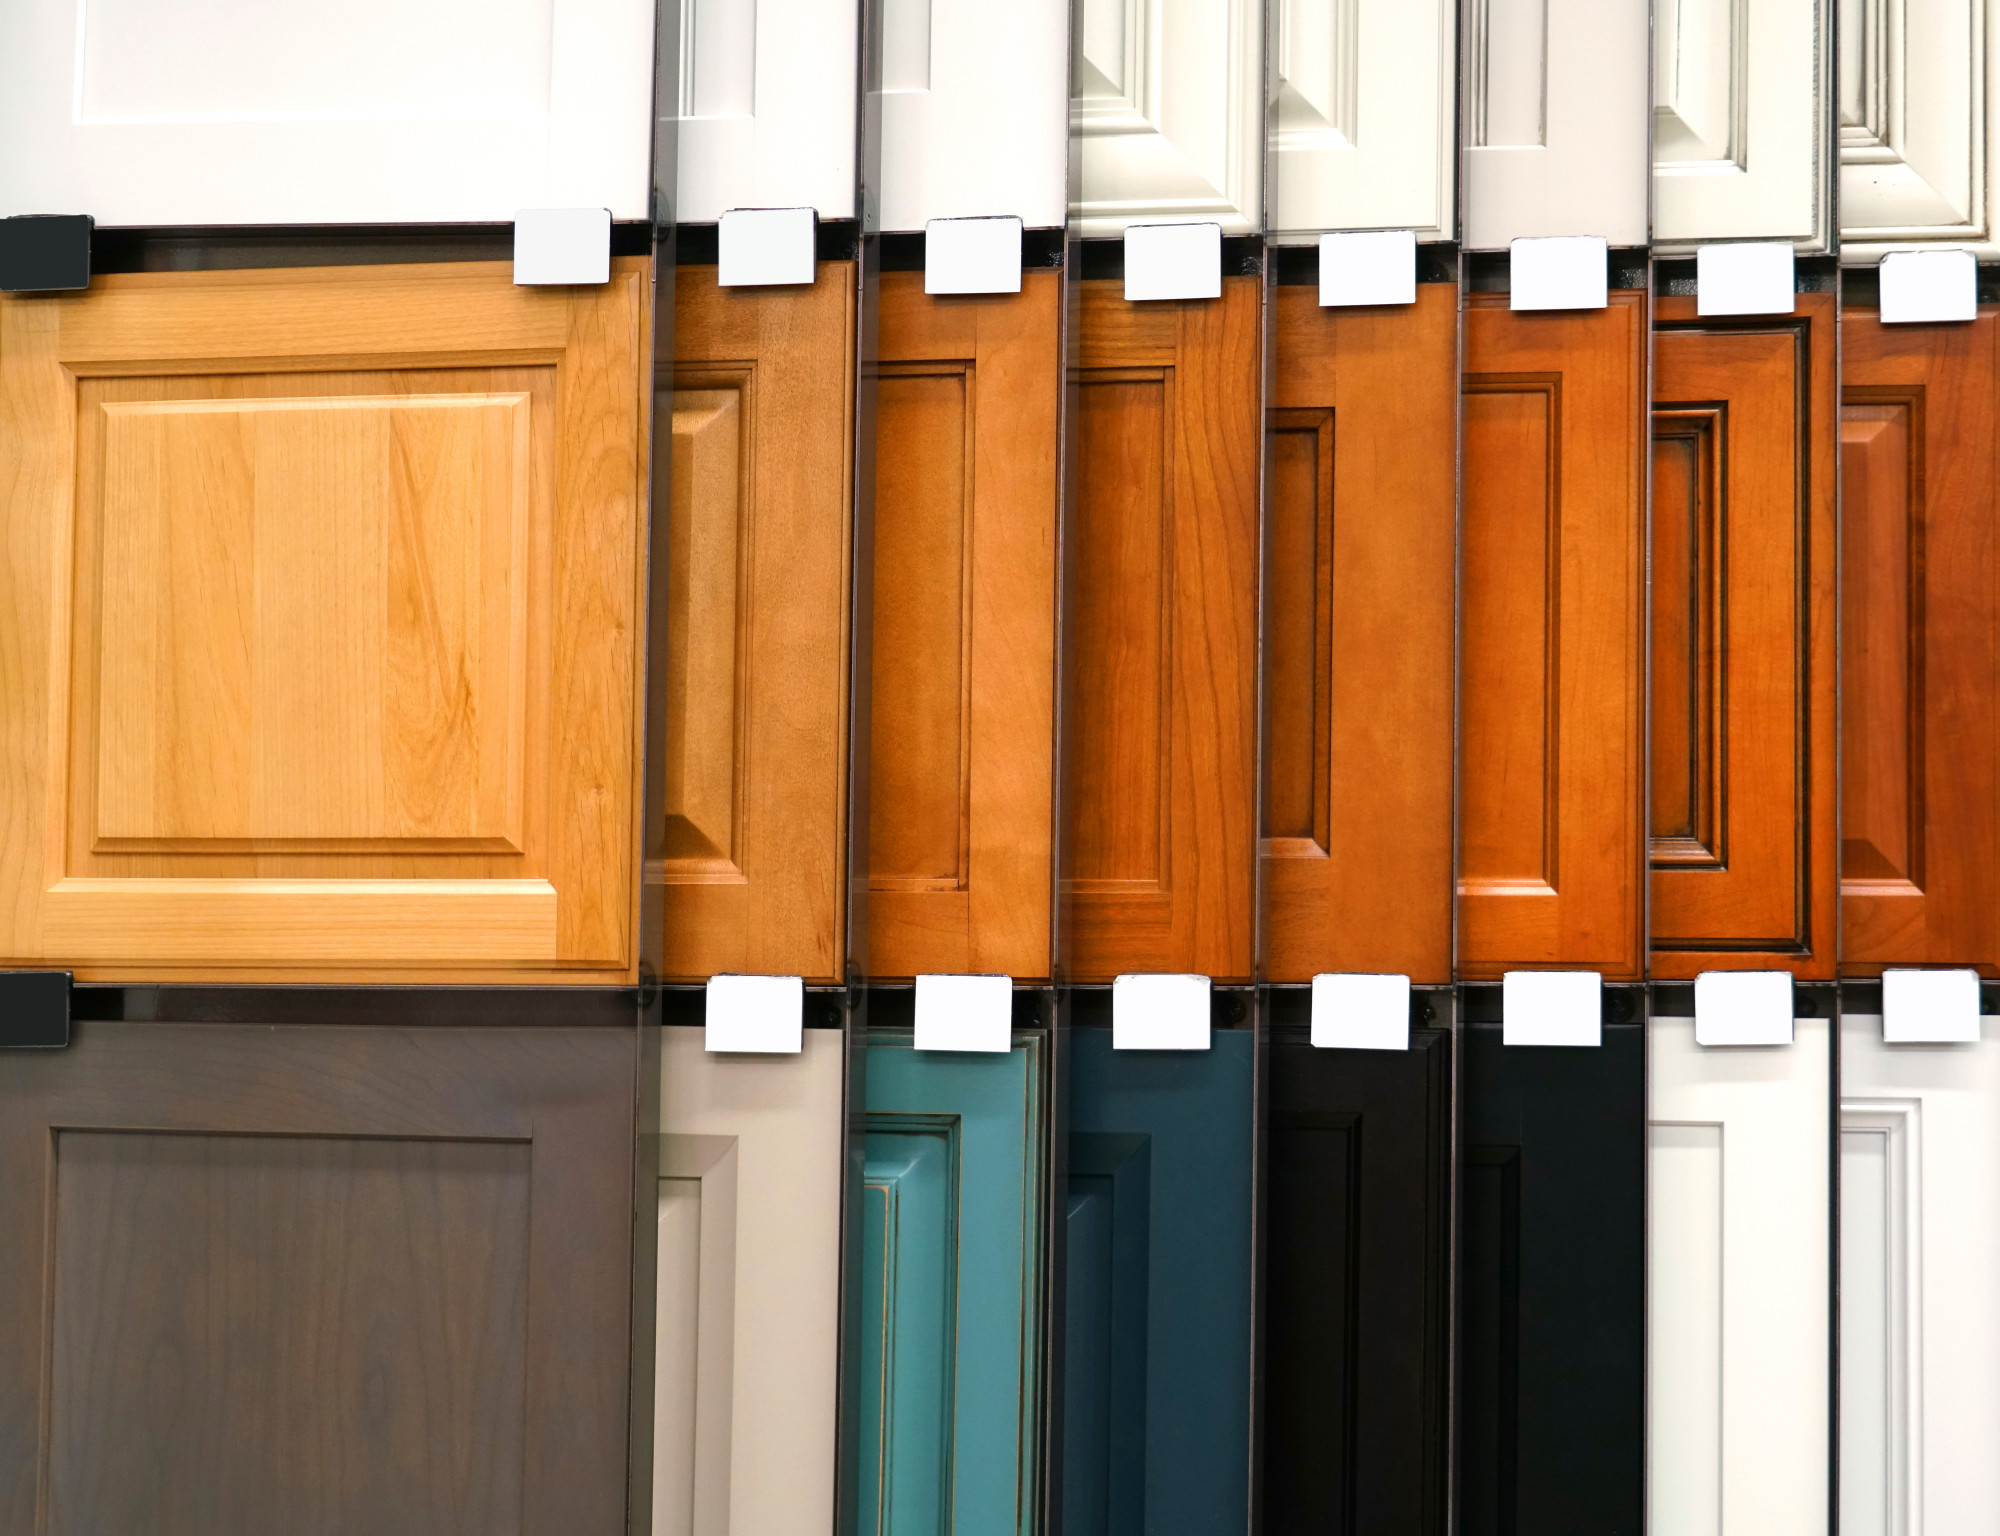 Cabinet Color Ideas to Brighten a Dark Kitchen